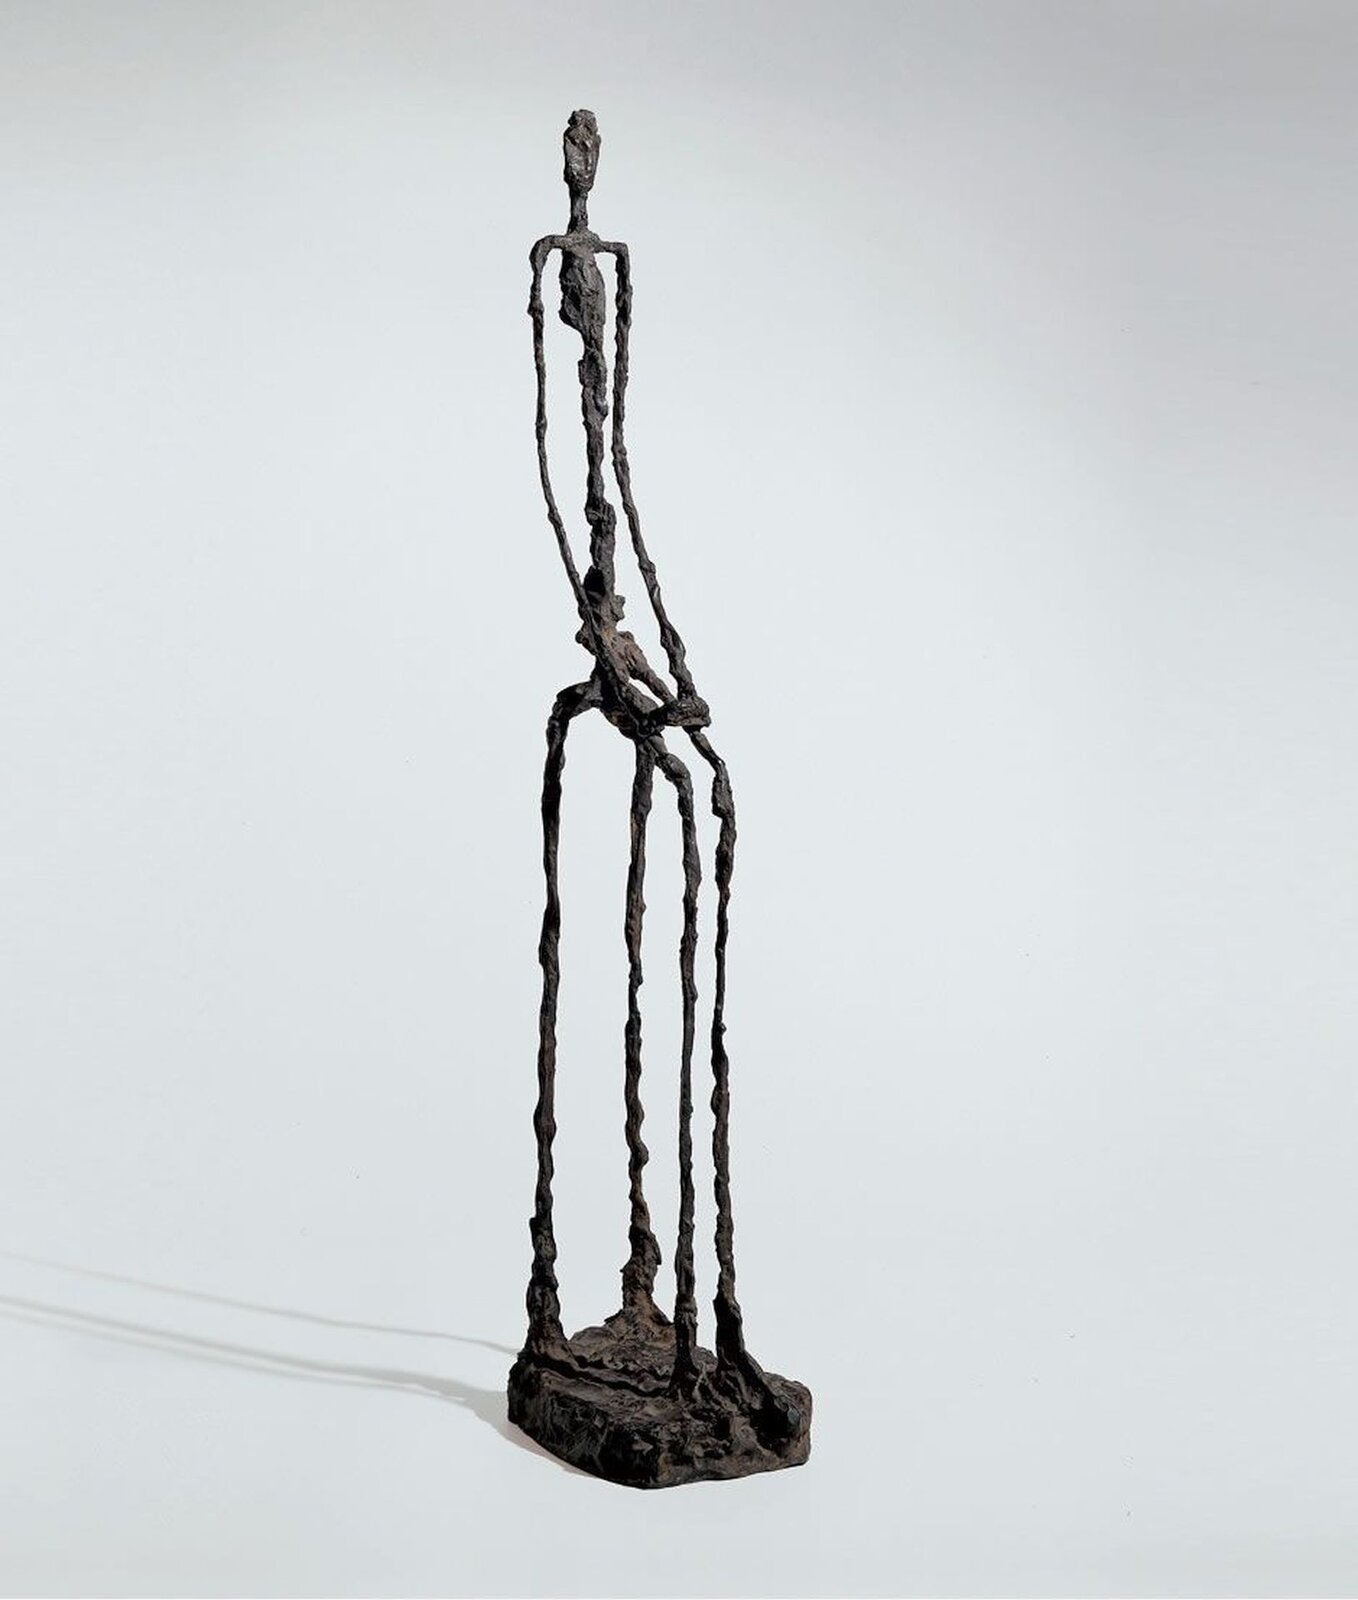 Ilustracja o kształcie pionowego prostokąta przedstawia rzeźbę Alberta Giacomettiego „Kobieta siedząca”.  Ukazuje fotografię smukłej postaci o konstrukcji szkieletowej. Podstawą jest niewielkich rozmiarów płyta o kształcie kwadratu. Ręce postaci spoczywają na kolanach. Posiada chropowatą fakturę. Tło fotografii jest białe. 